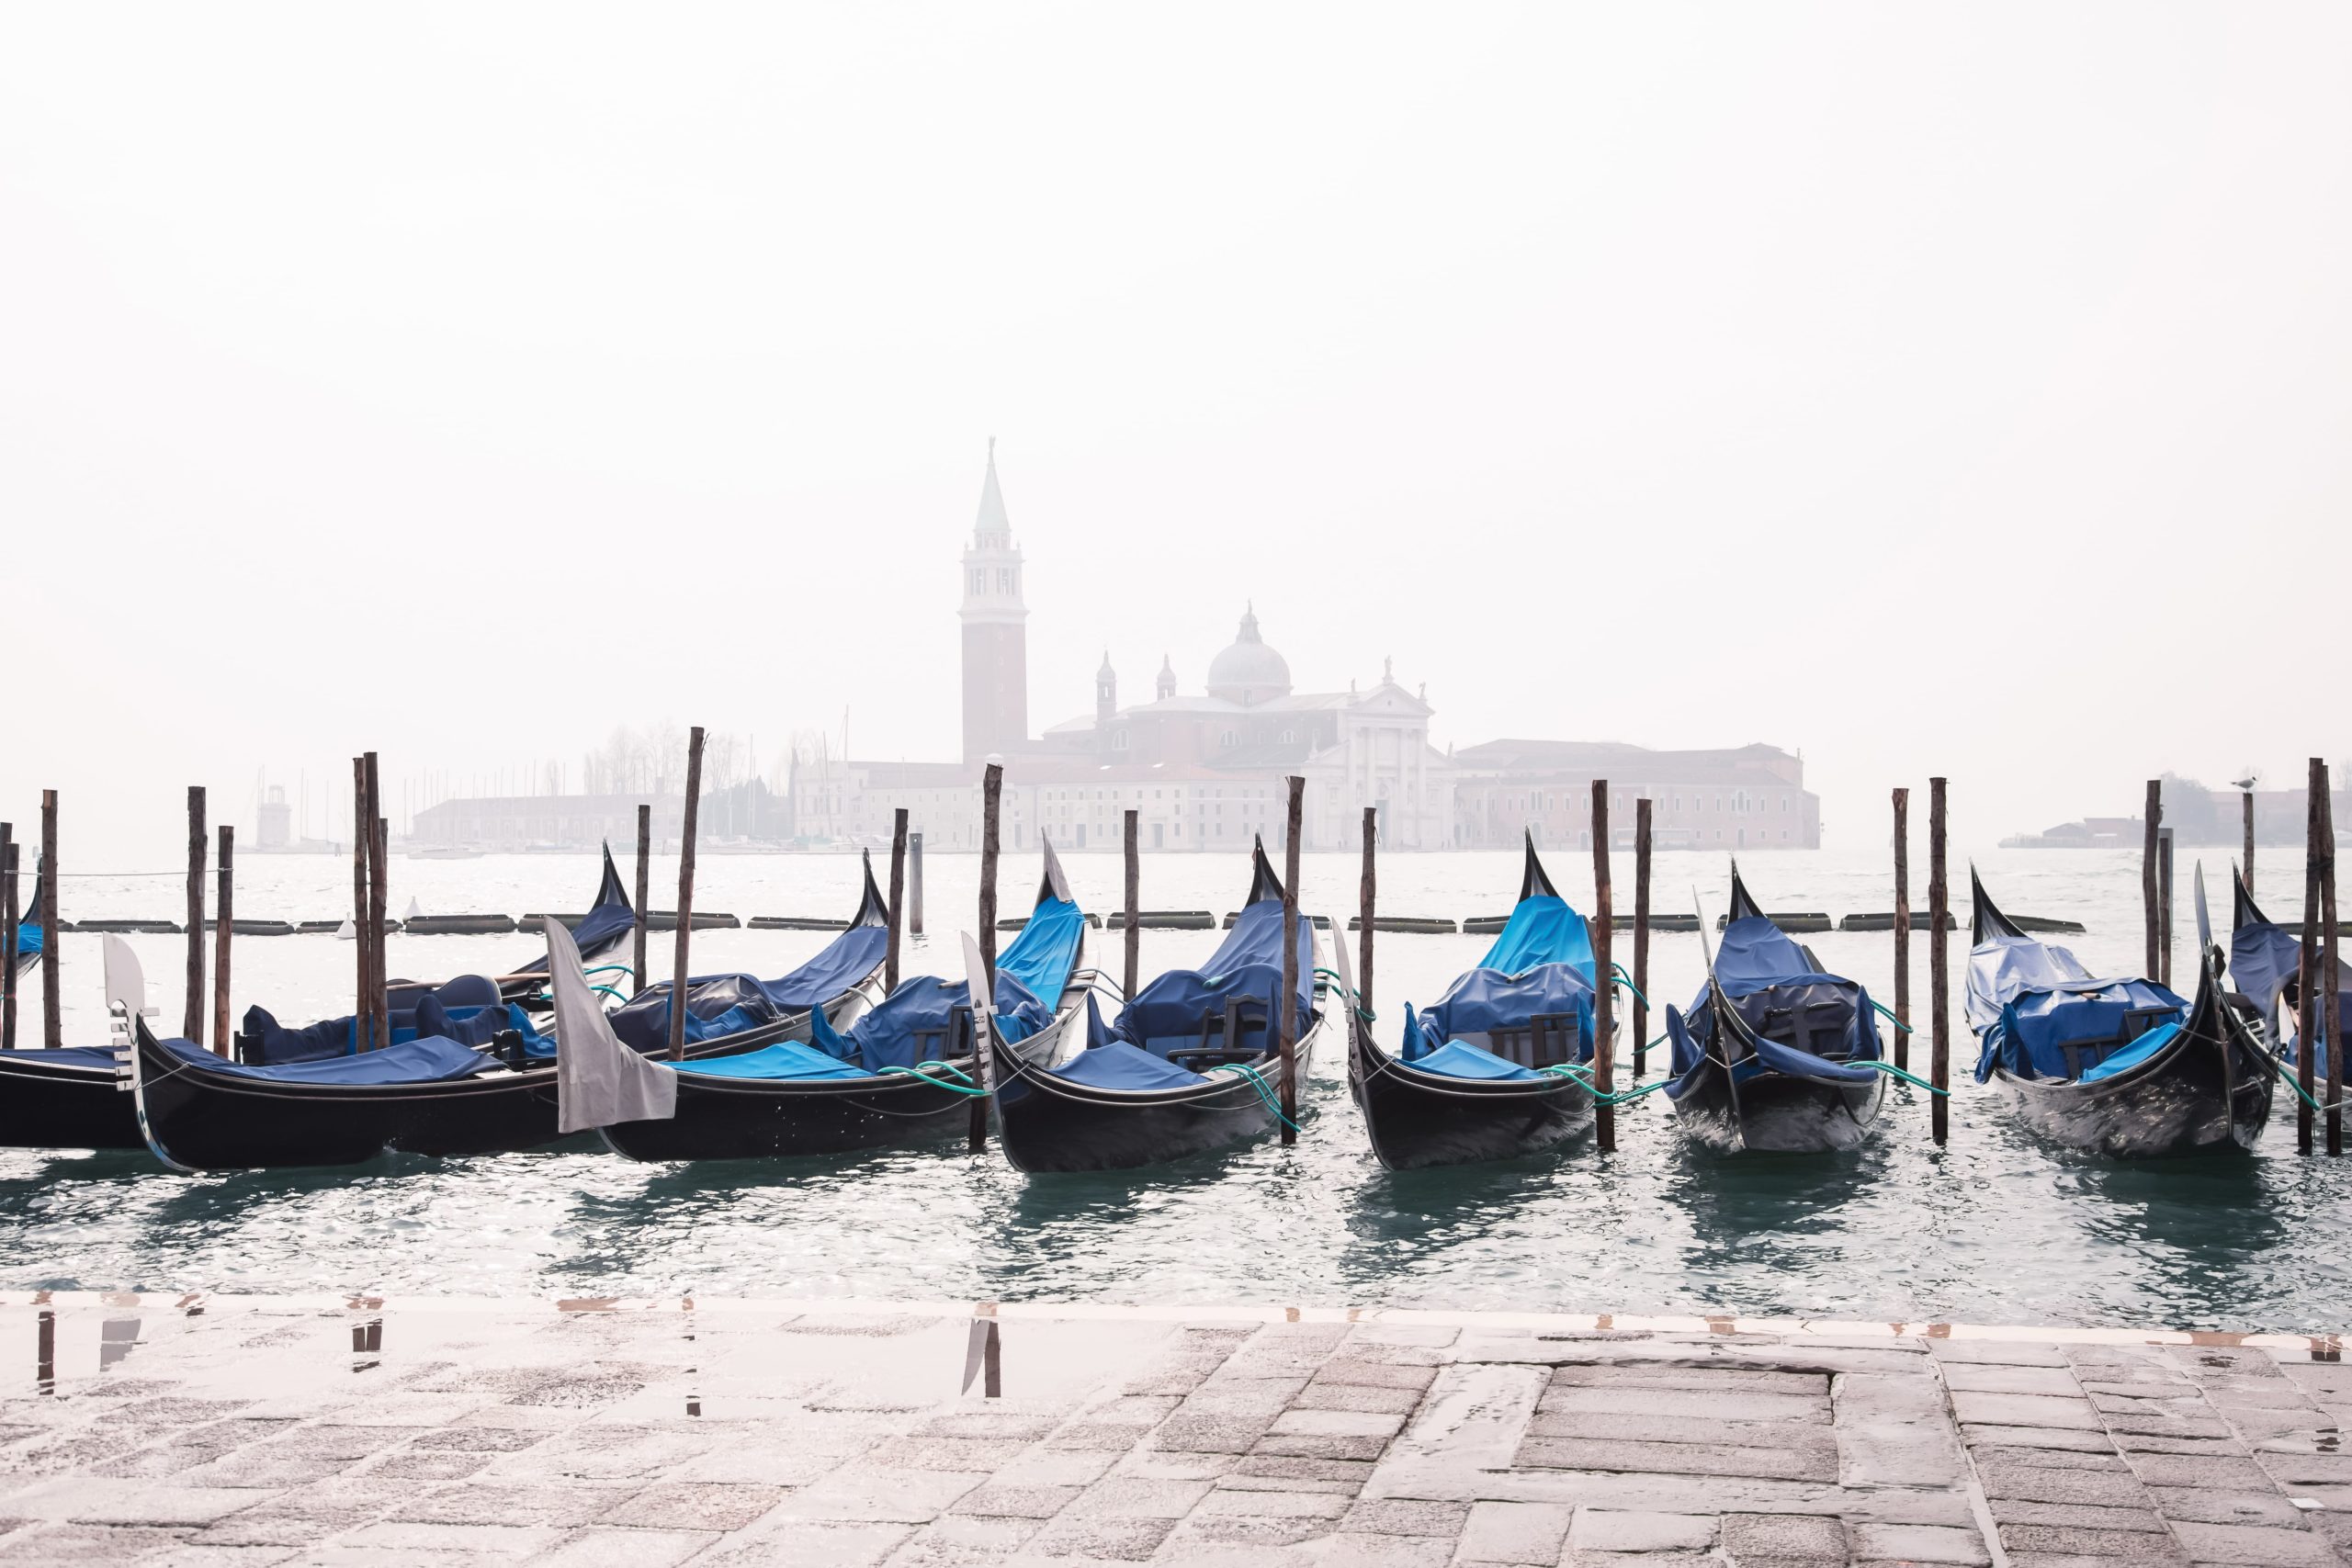 Allarme smog a Venezia: inquinamento è provocato dalle barche